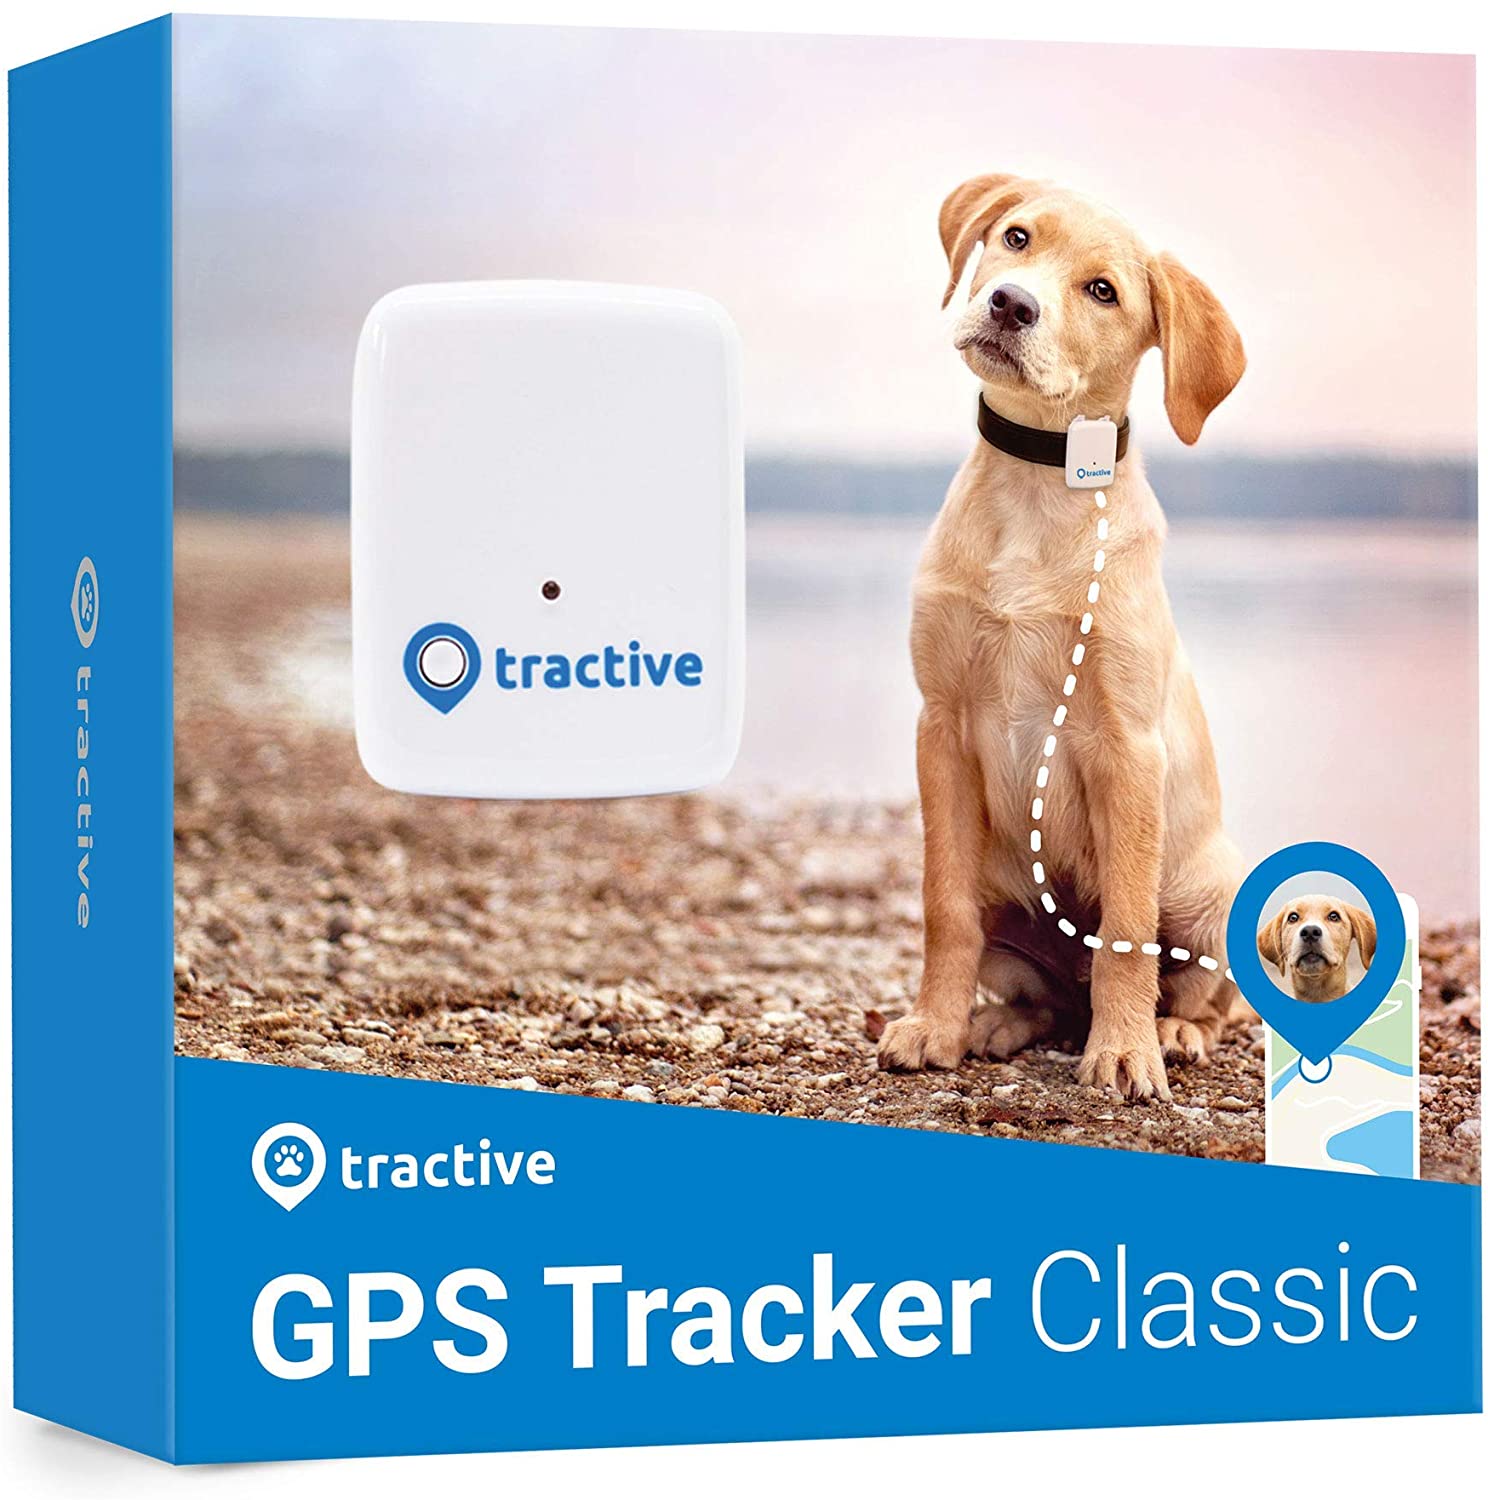 #1 - Tractive localizador GPS para perros con rastreador de rango ilimitado